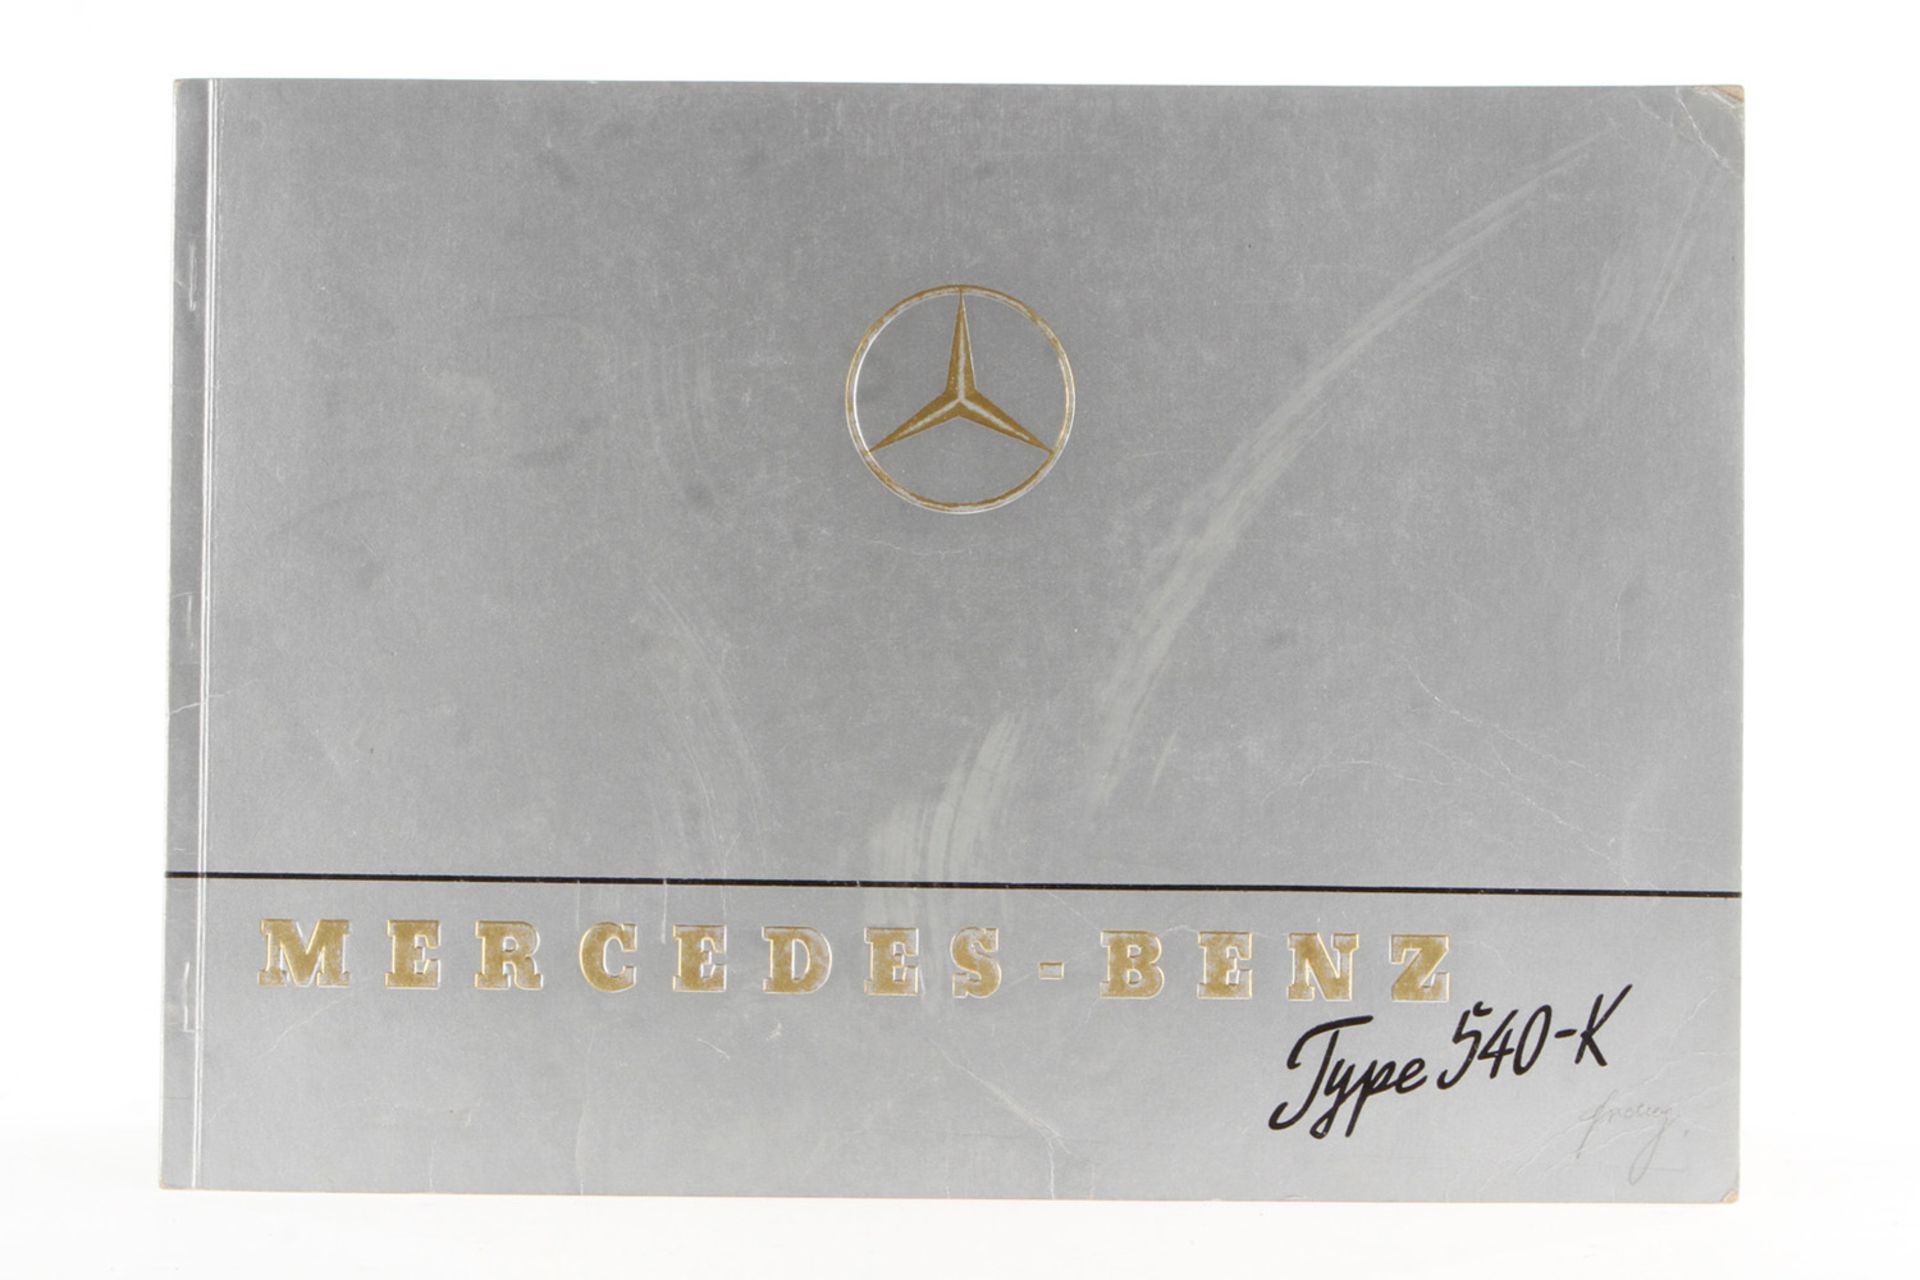 Original Prospekt Mercedes Benz Type 540-K,  farbig, Umschlag leichte Alterungsspuren, No. 115